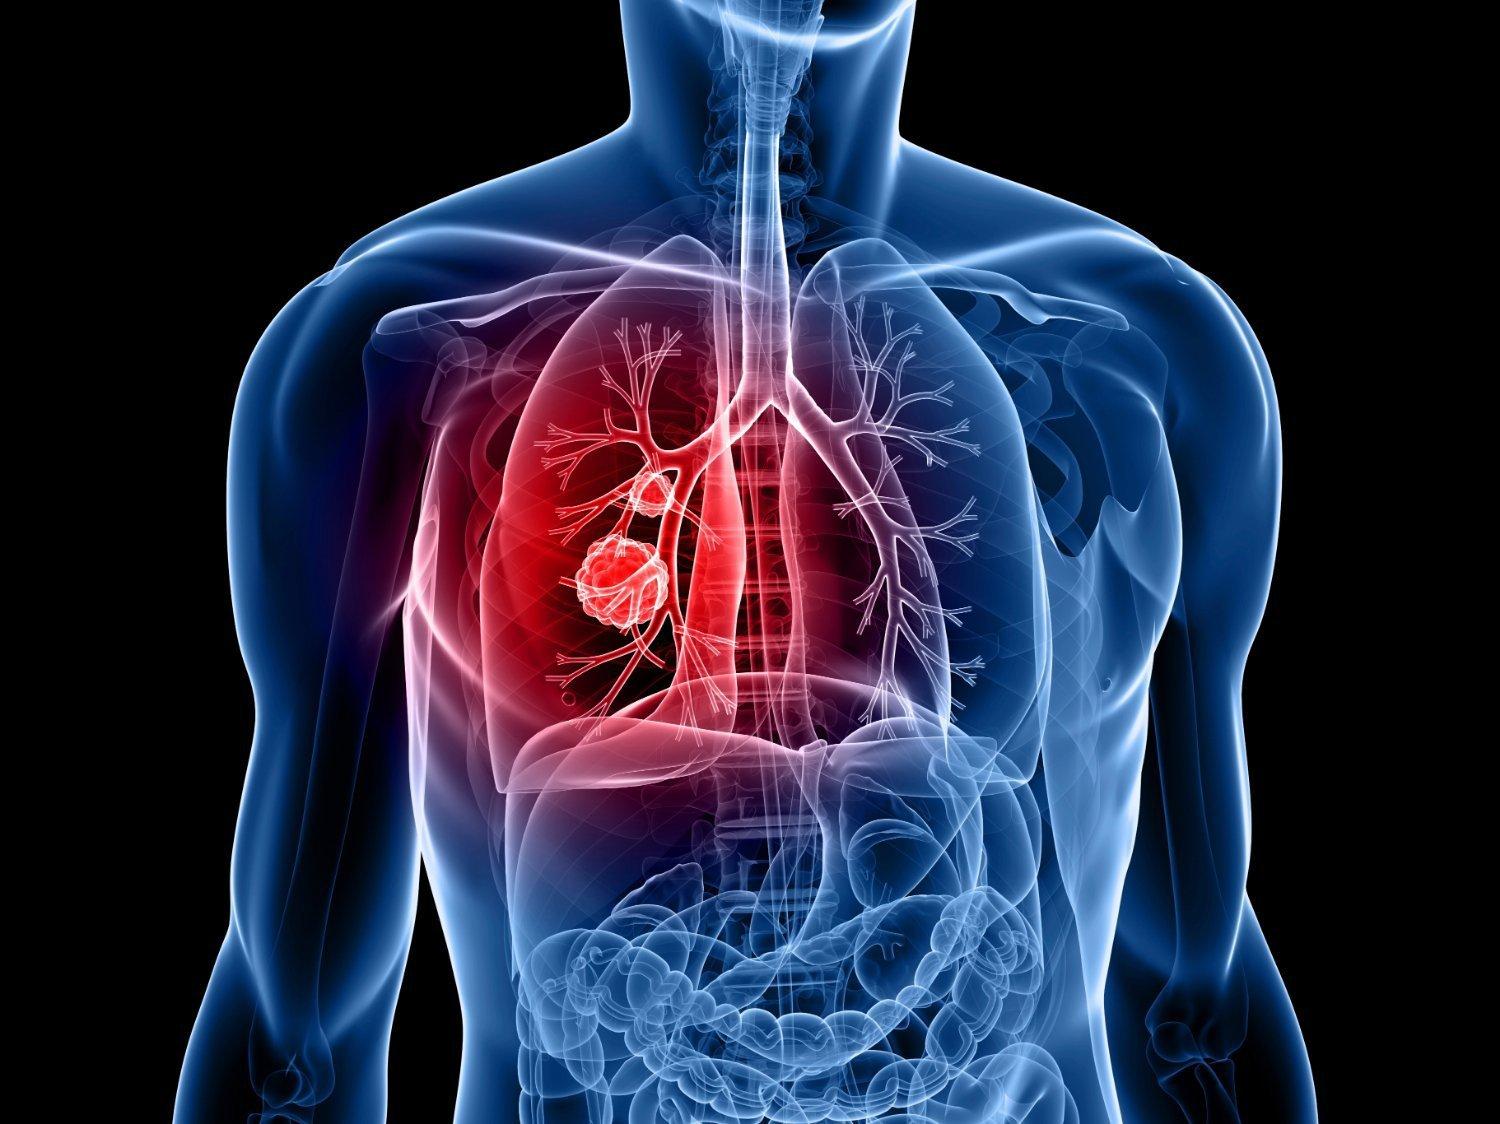 Nếu người bệnh biết được những tiên lượng về khả năng sống sau khi mắc ung thư phổi, sẽ có được cách phòng ngừa, thay đổi lối sống và chăm sóc điều trị tốt hơn.